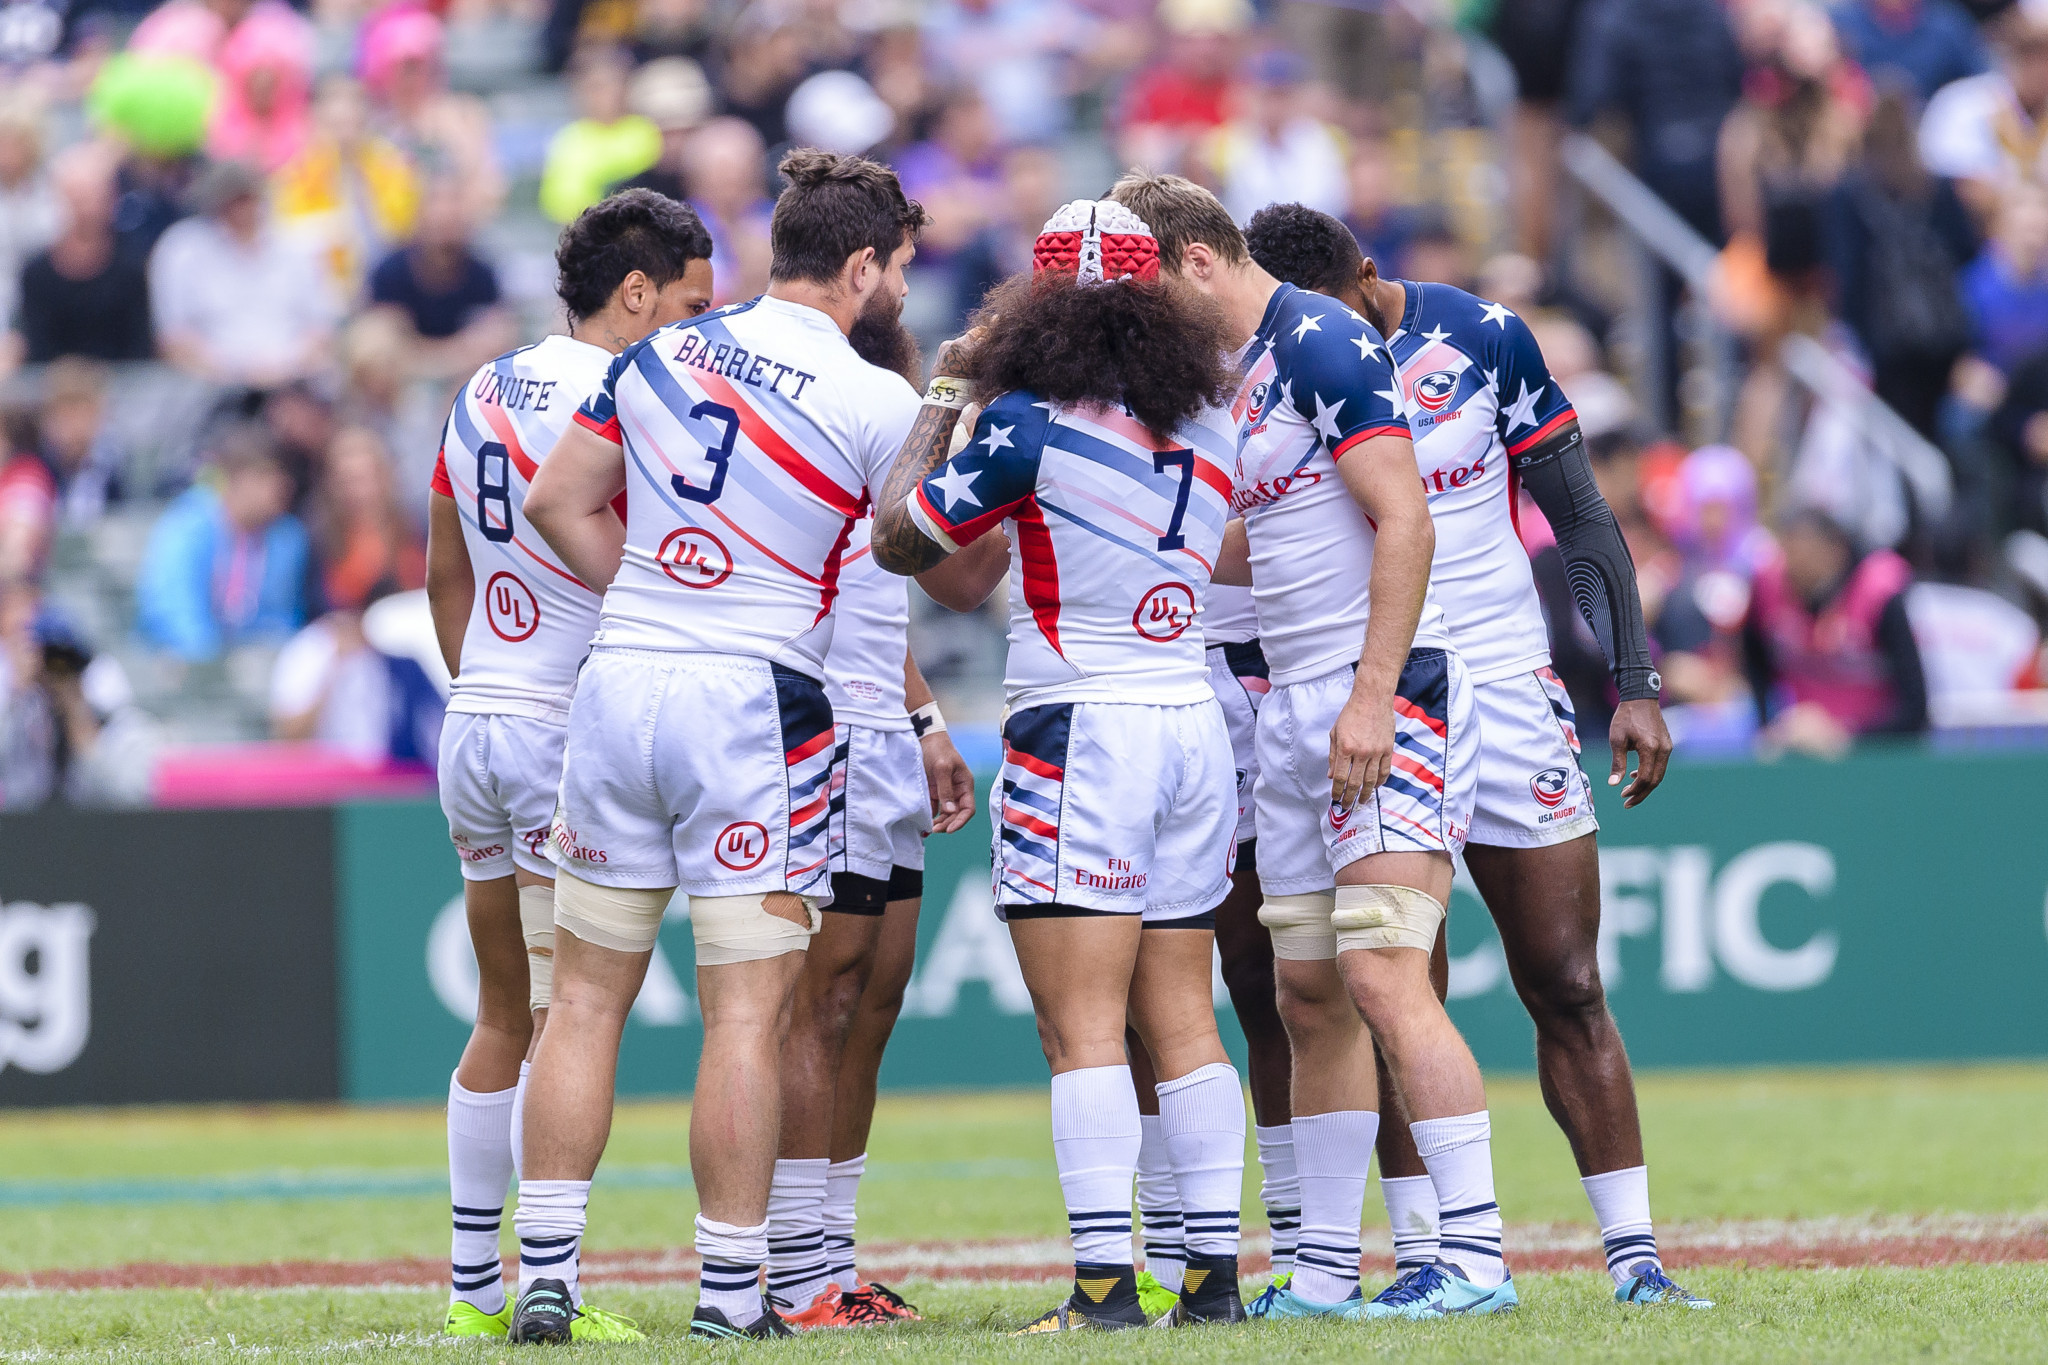 USA Rugby | LinkedIn